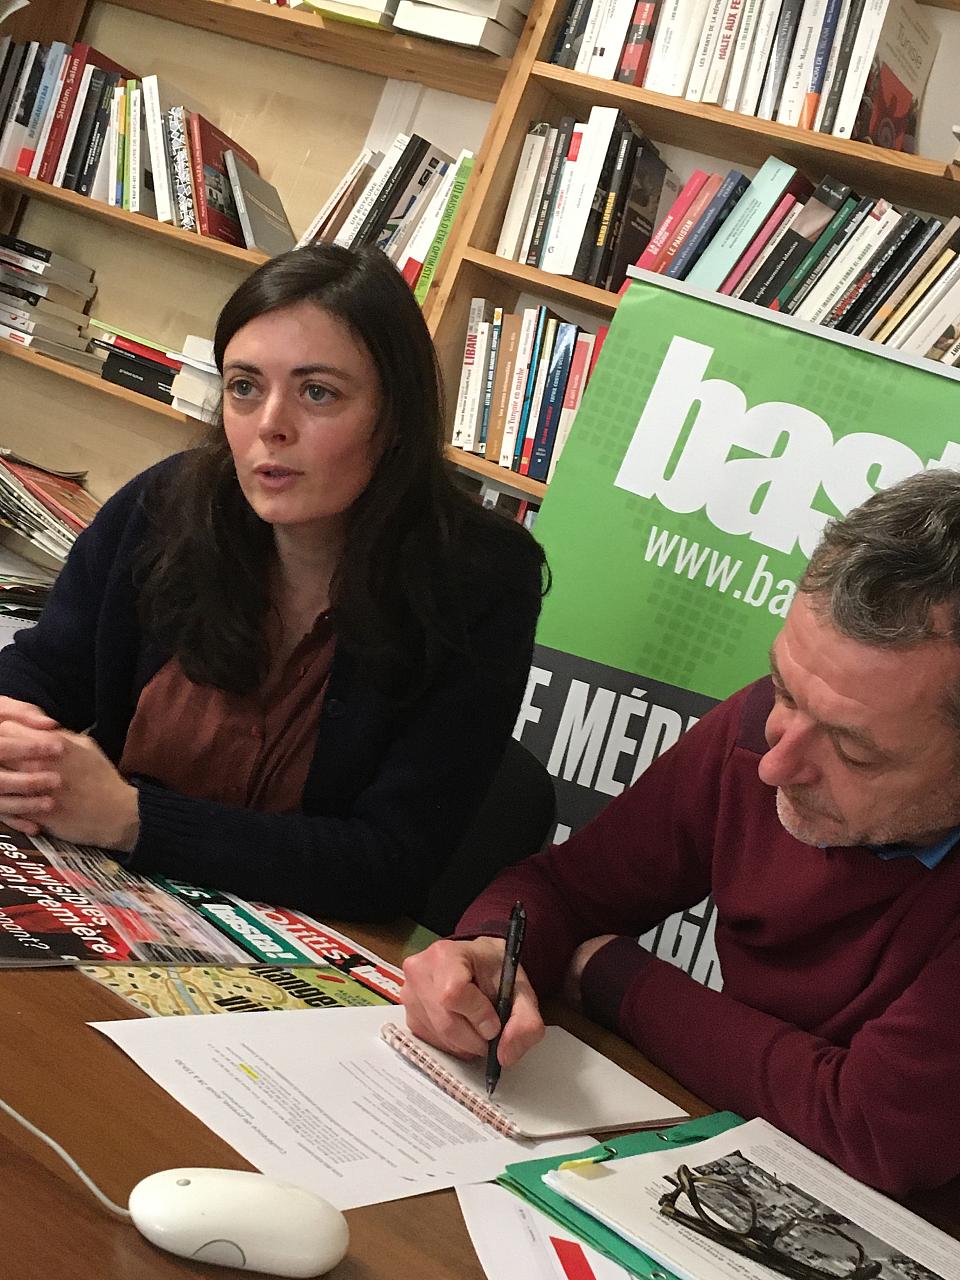 La journaliste Inès Léraud avec la rédaction de basta! lors du procès en diffamation intenté par le groupe agro-alimentaire breton Chéritel contre basta! et la journaliste en janvier 2021. Chéritel a retiré sa plainte le jour de l'audience.